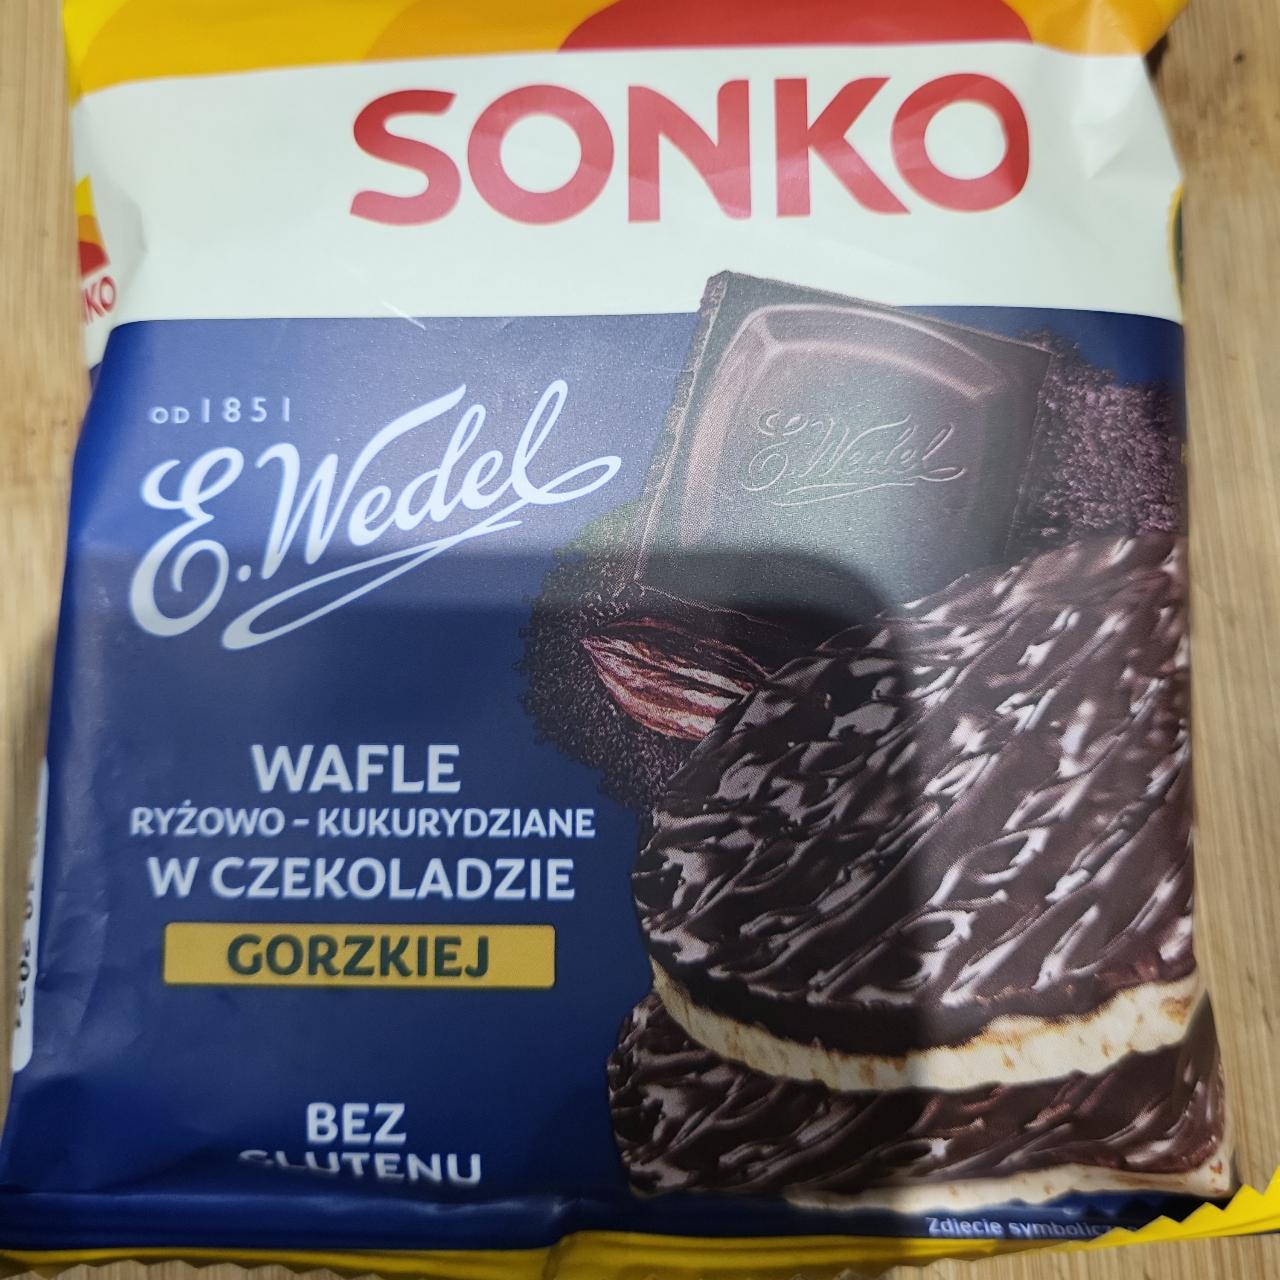 Zdjęcia - Sonko Wafle ryżowo-kukurydziane w czekoladzie gorzkiej 30 g